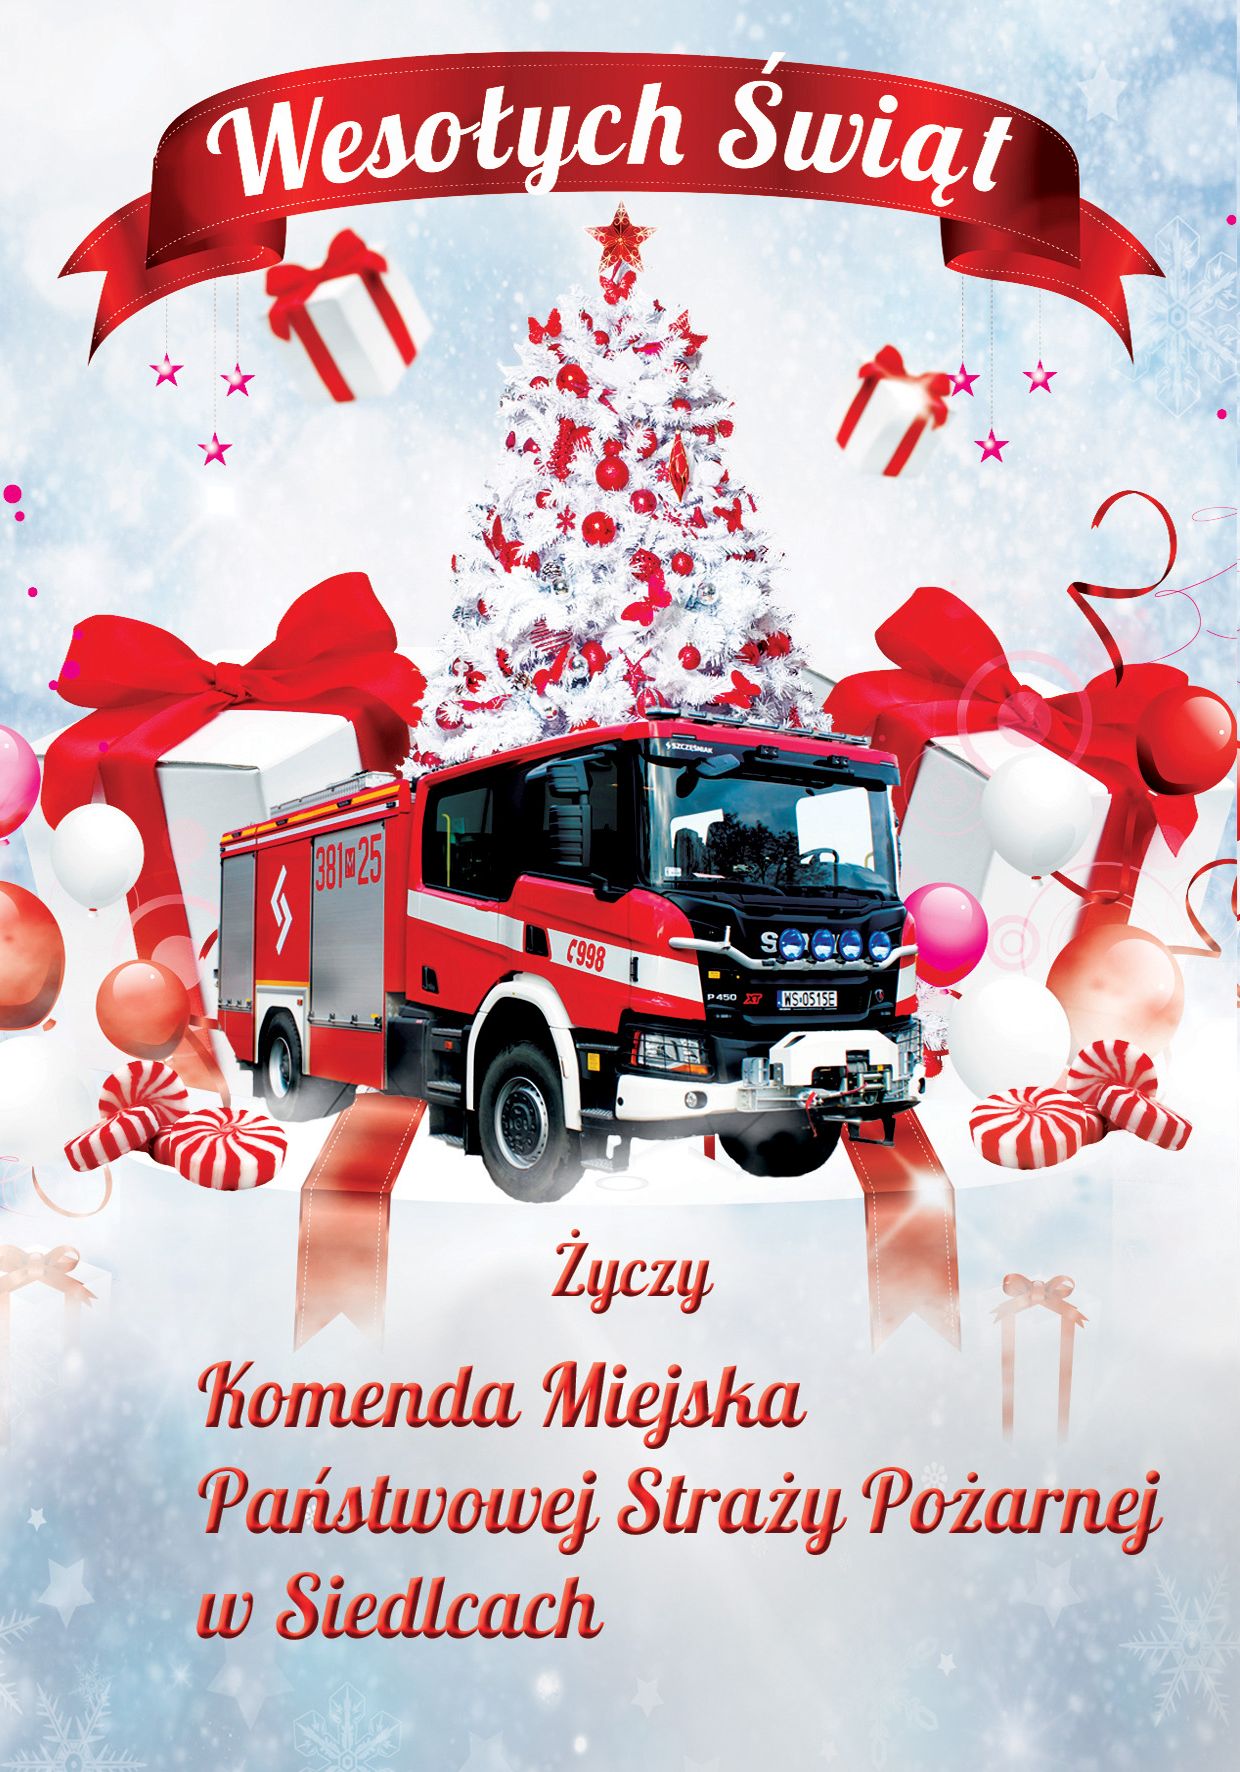 Plakat "Wesołych Świąt życzy Komenda Miejska Państwowej Straży Pożarnej w Siedlcach". Na zdjęciu samochód pożarniczy wśród prezentów pod choinką.